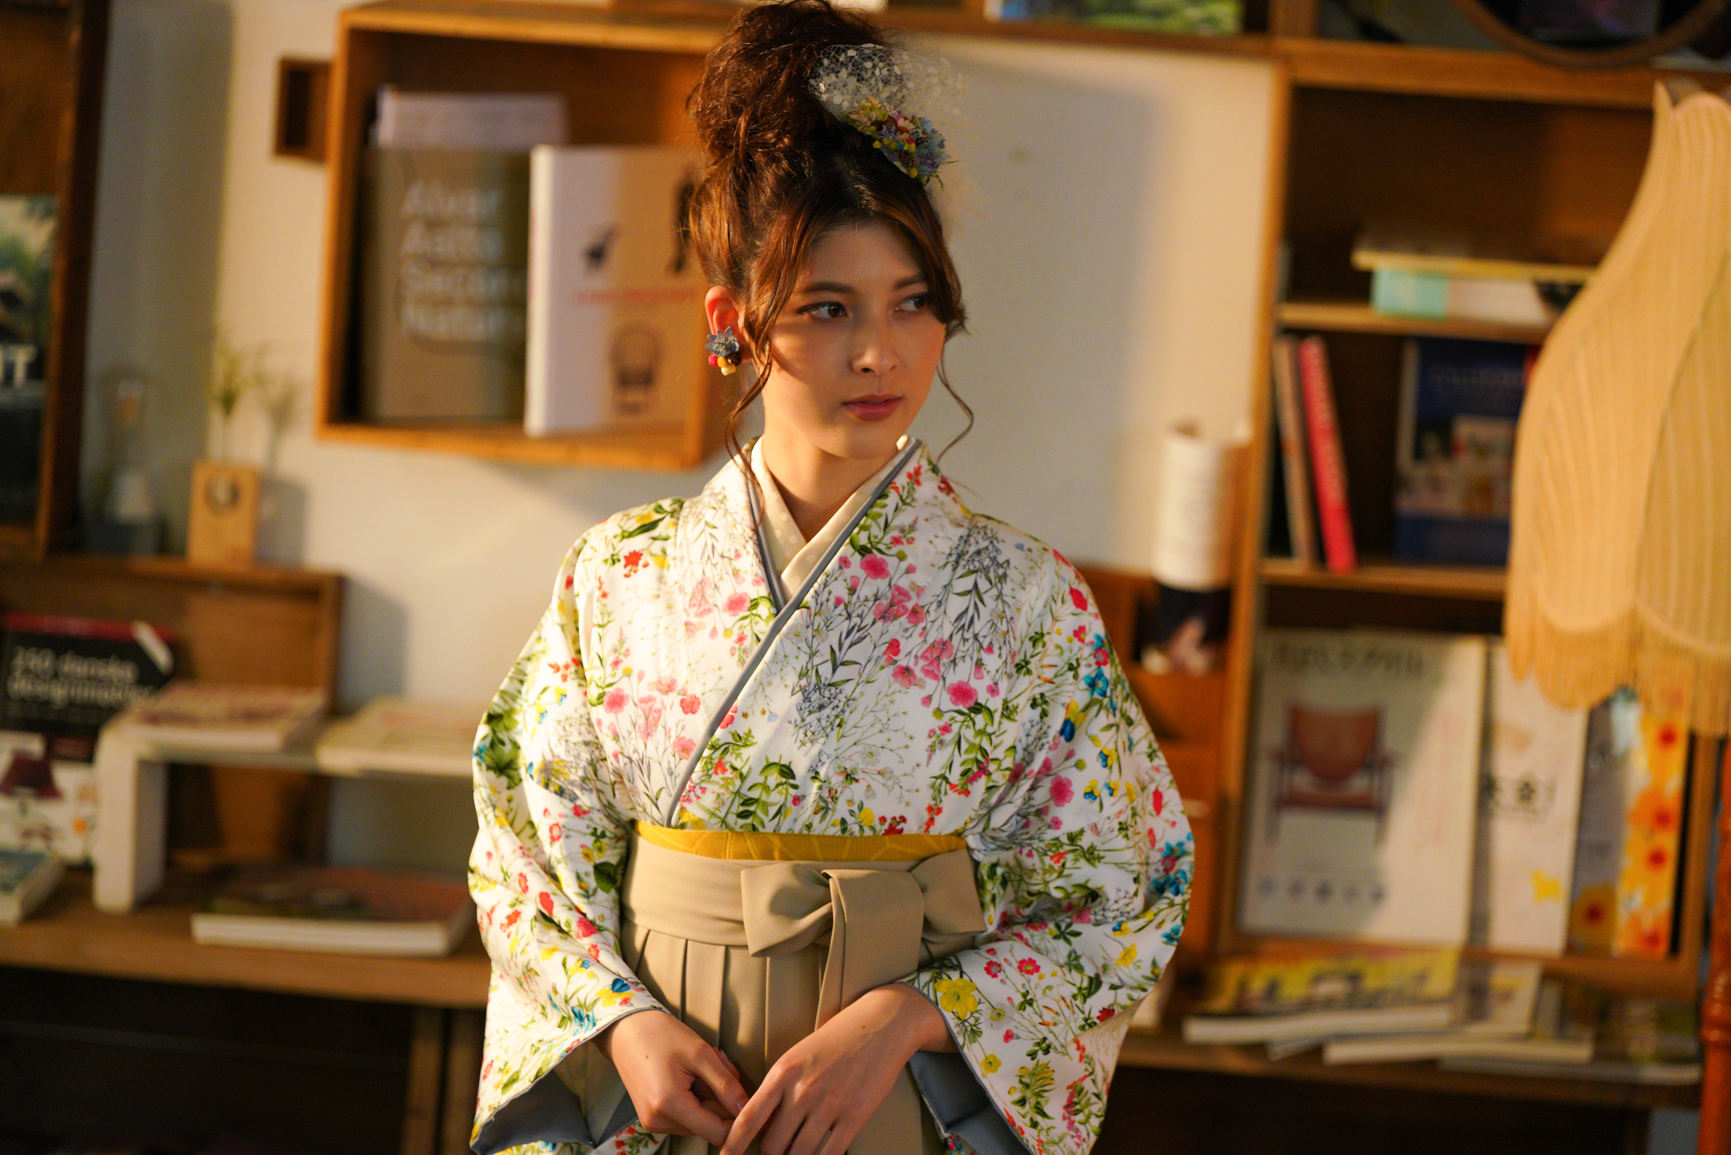 ラフィネモカ（Raffine Mocha）ブランドの、白地にカラフルな総小花柄の二尺袖と、ベージュ色の袴の女性用卒業式袴を着用したアップ写真